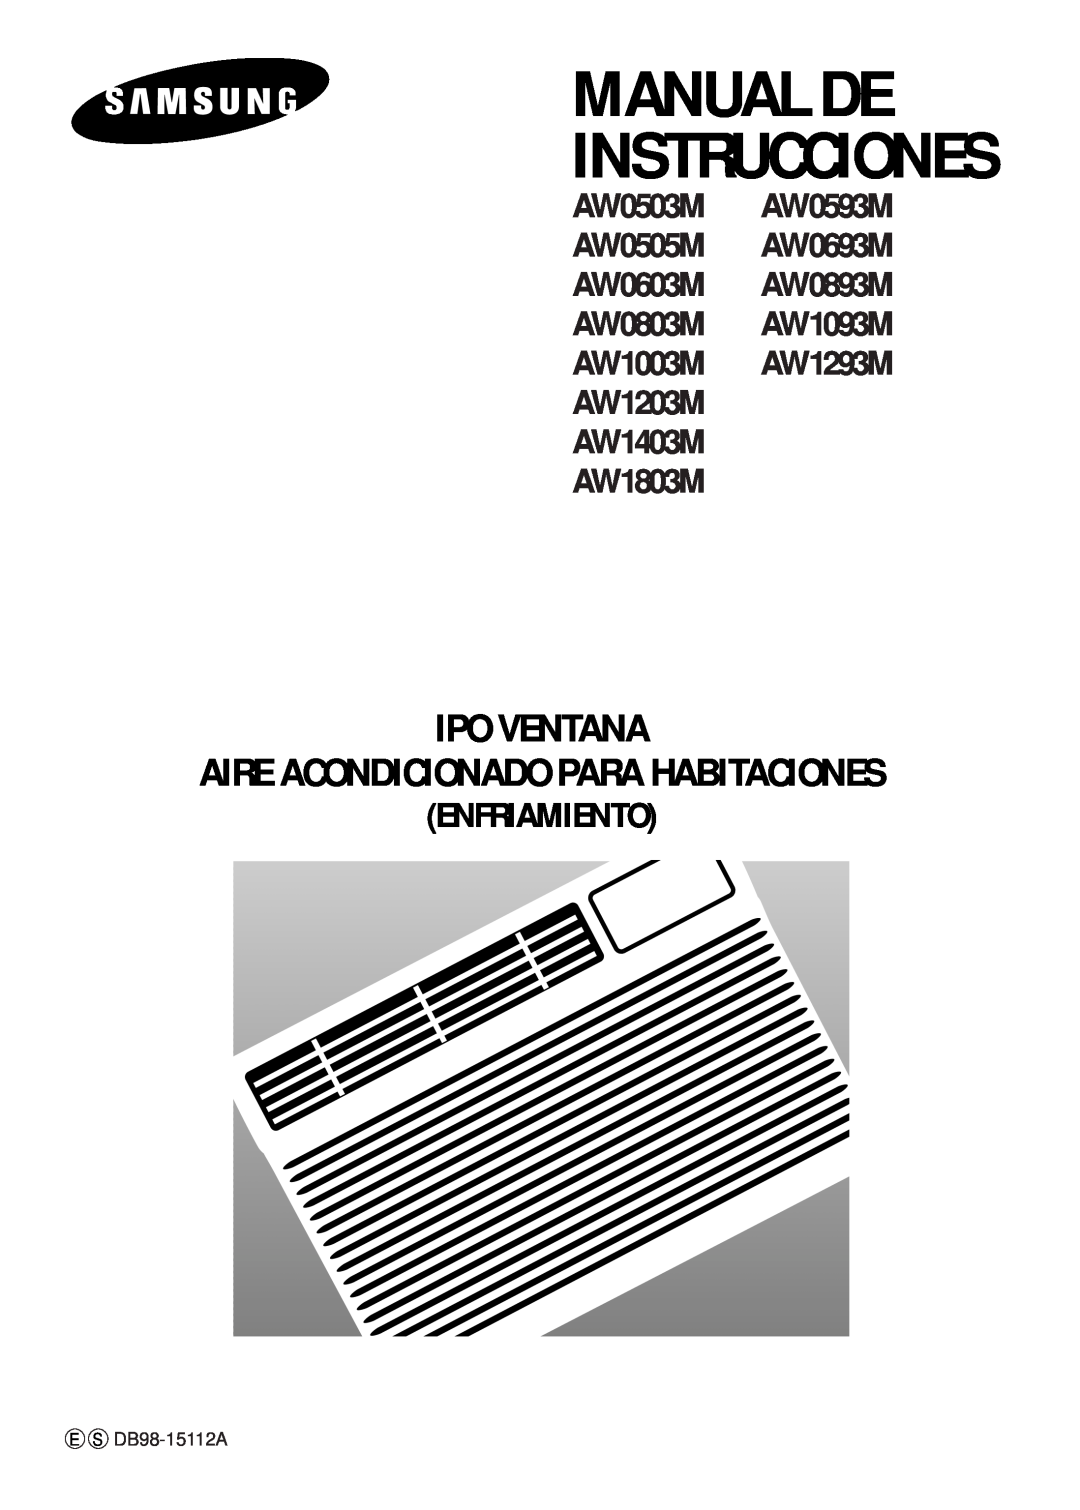 Samsung AW1203M manual Manual De Instrucciones, Ipo Ventana Aire Acondicionado Para Habitaciones, AW1803M, Enfriamiento 